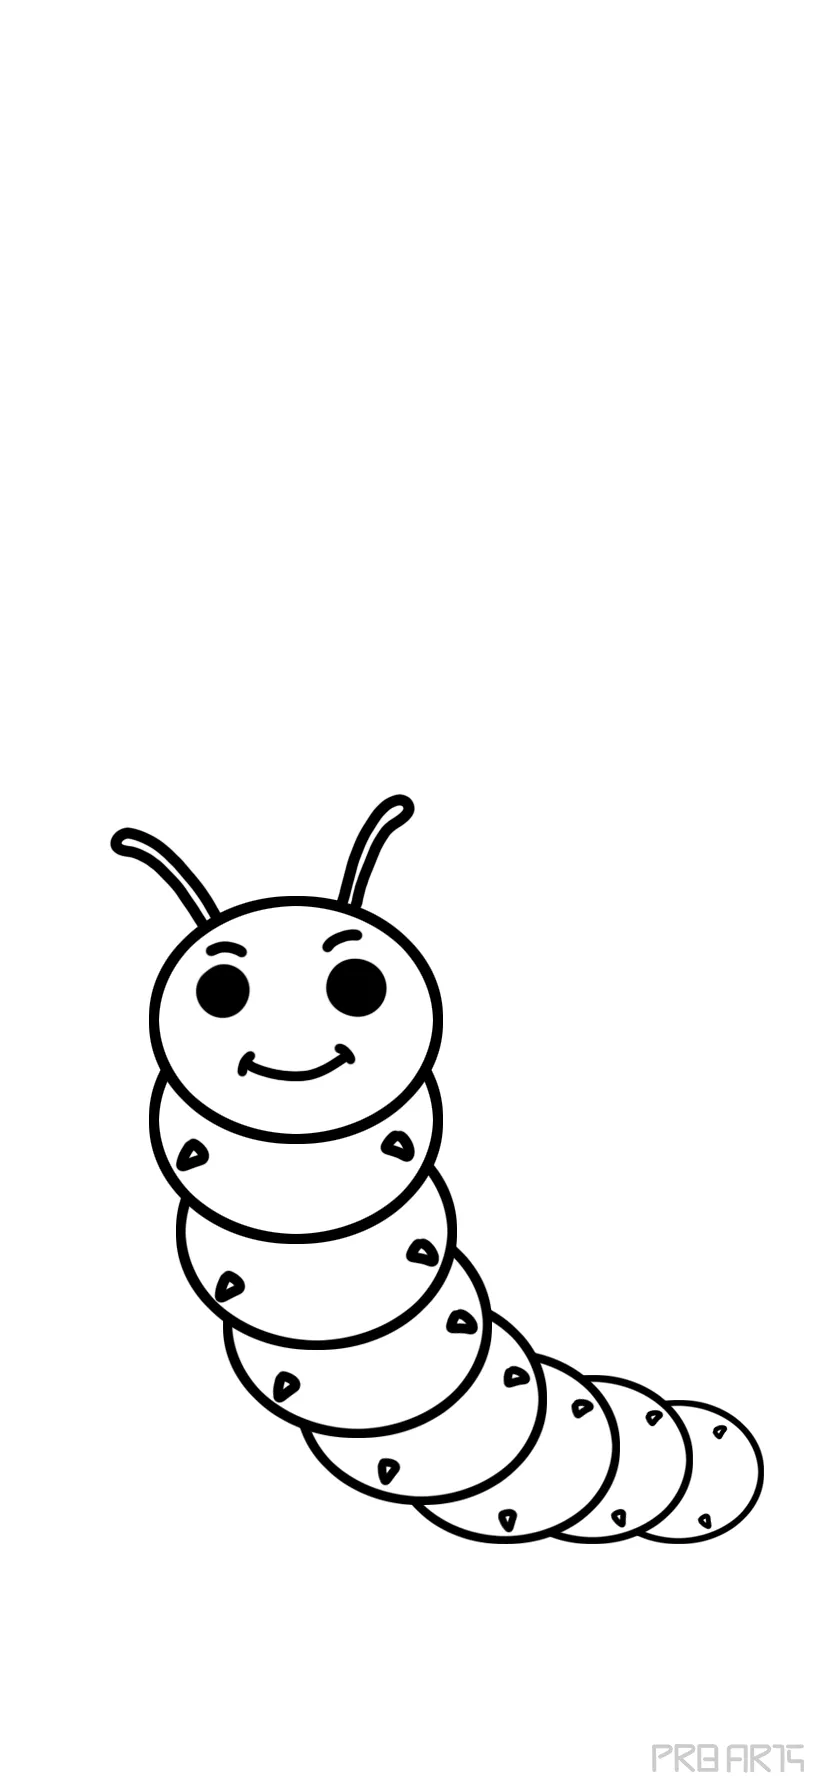 Caterpillar Sketch by PinkBunnie on DeviantArt